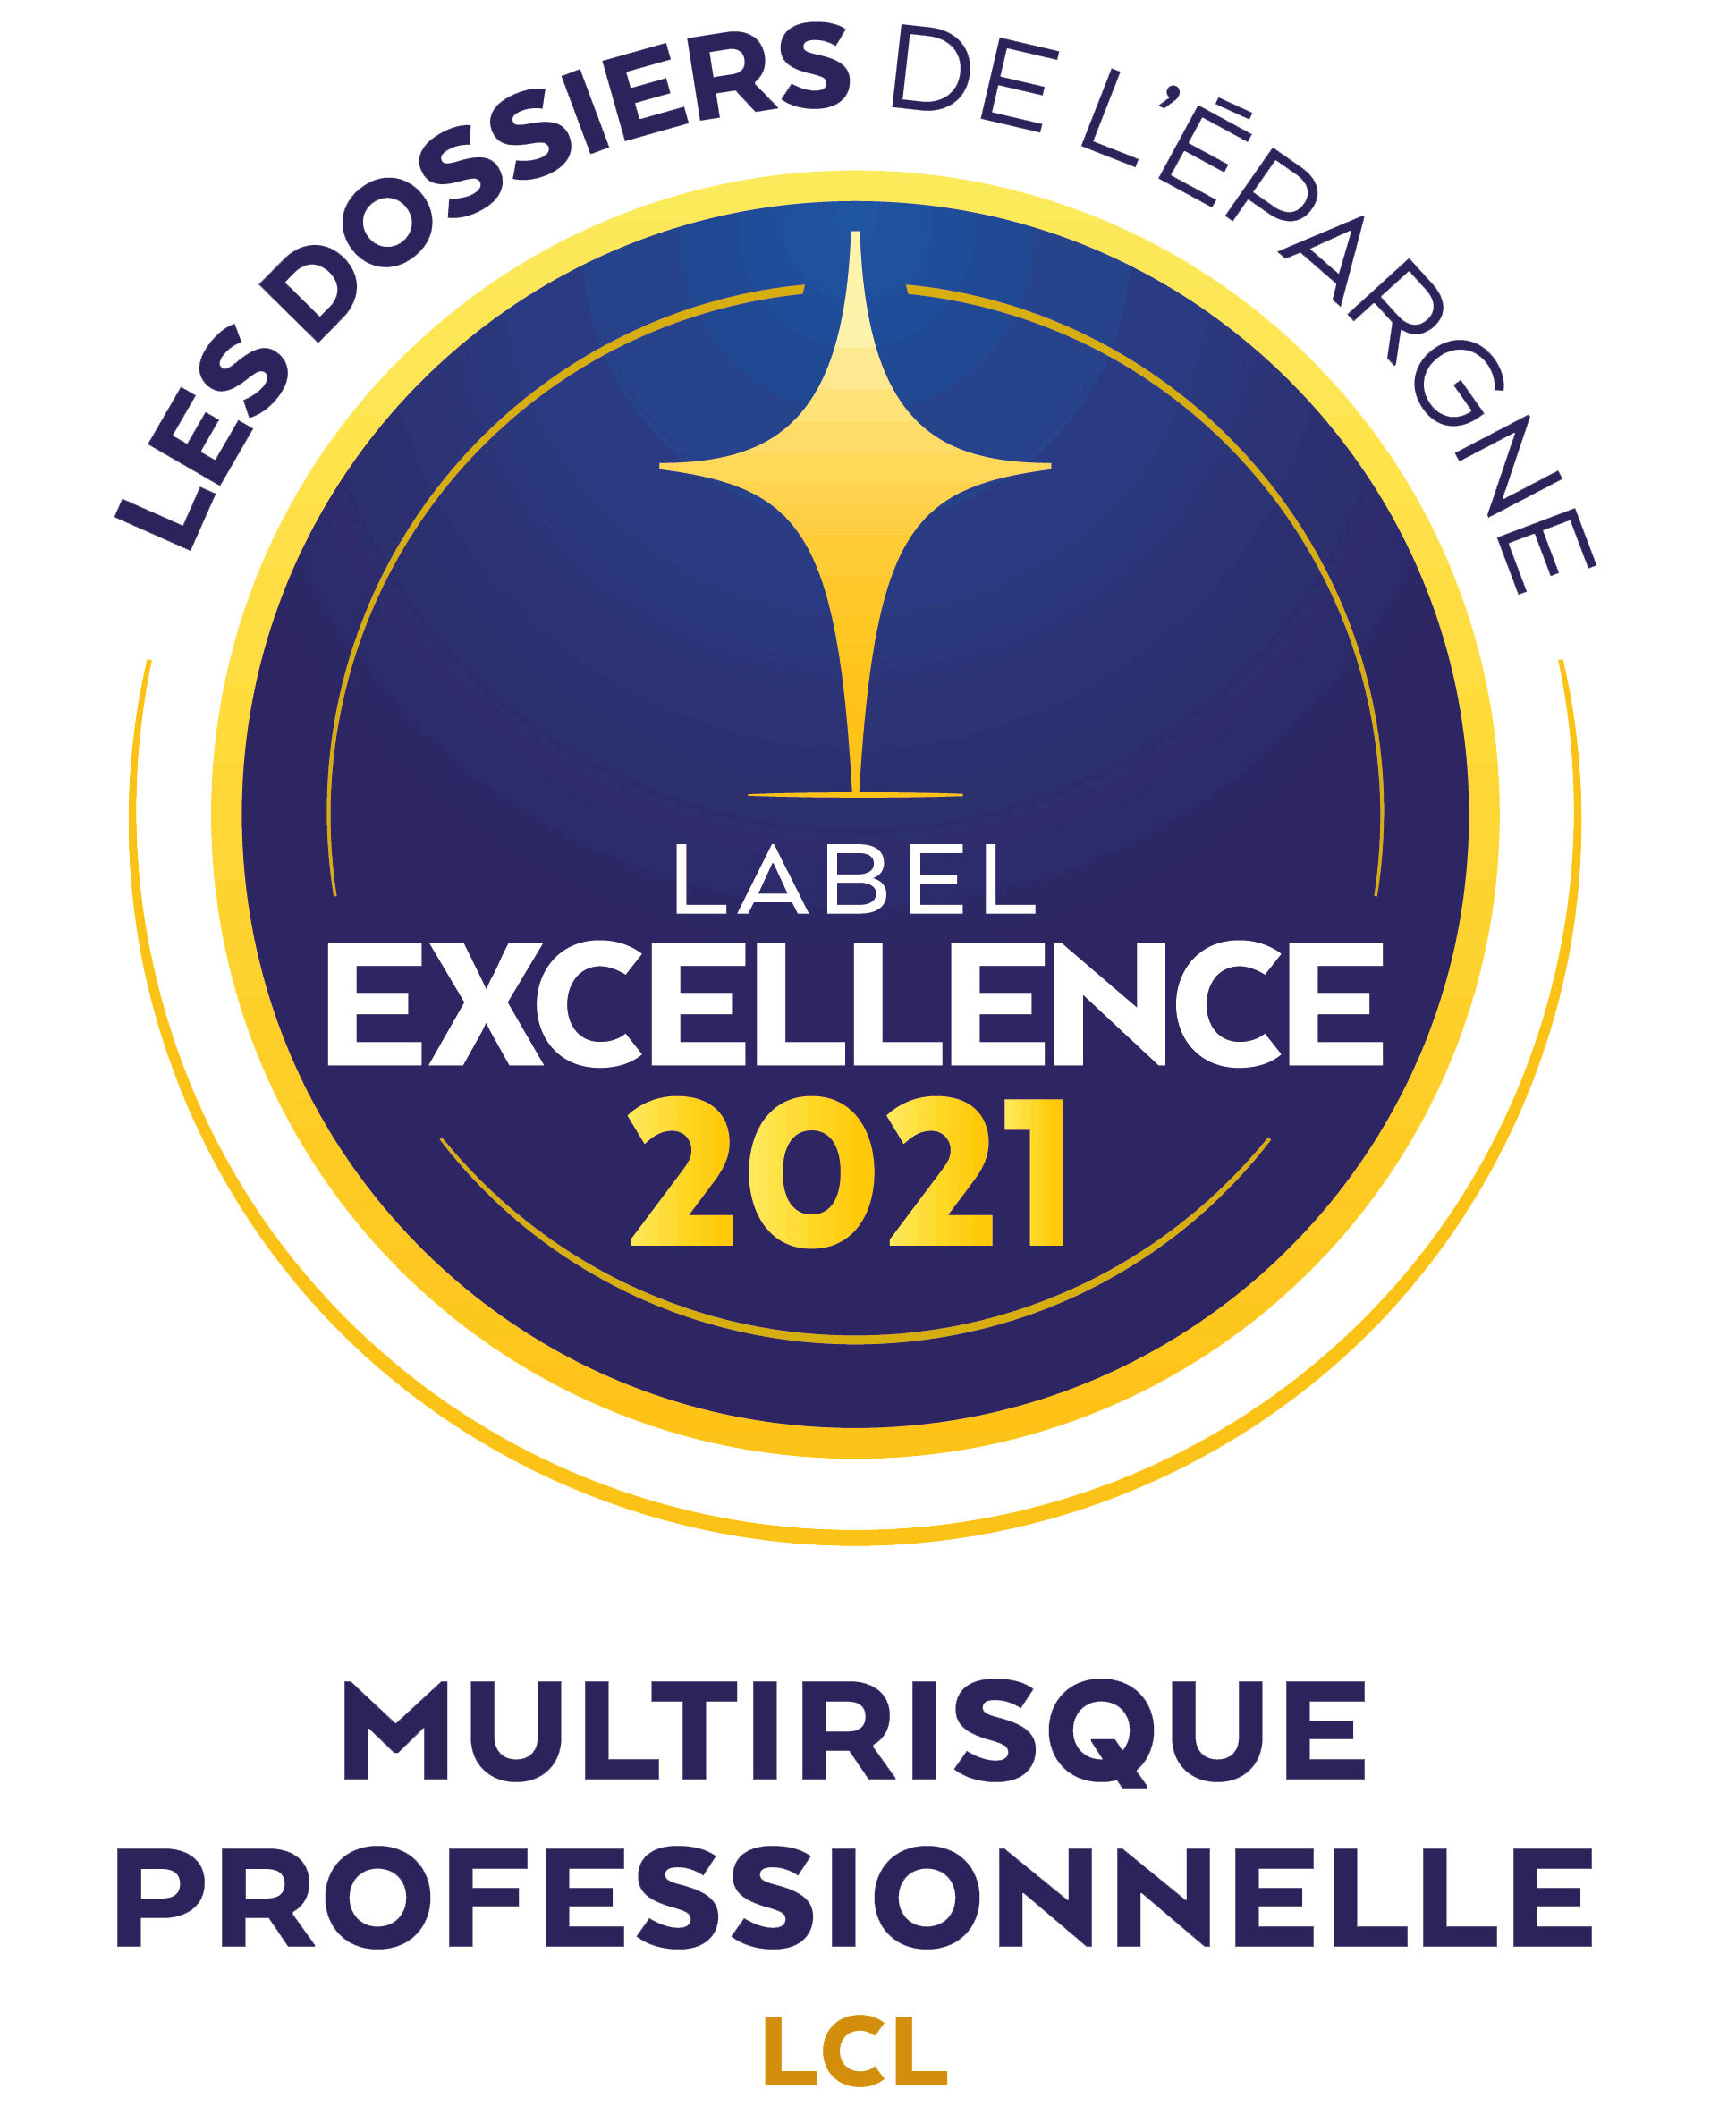 Label Excellence 2021 les dossiers de l'épargne : Multirisque Professionnelle LCL